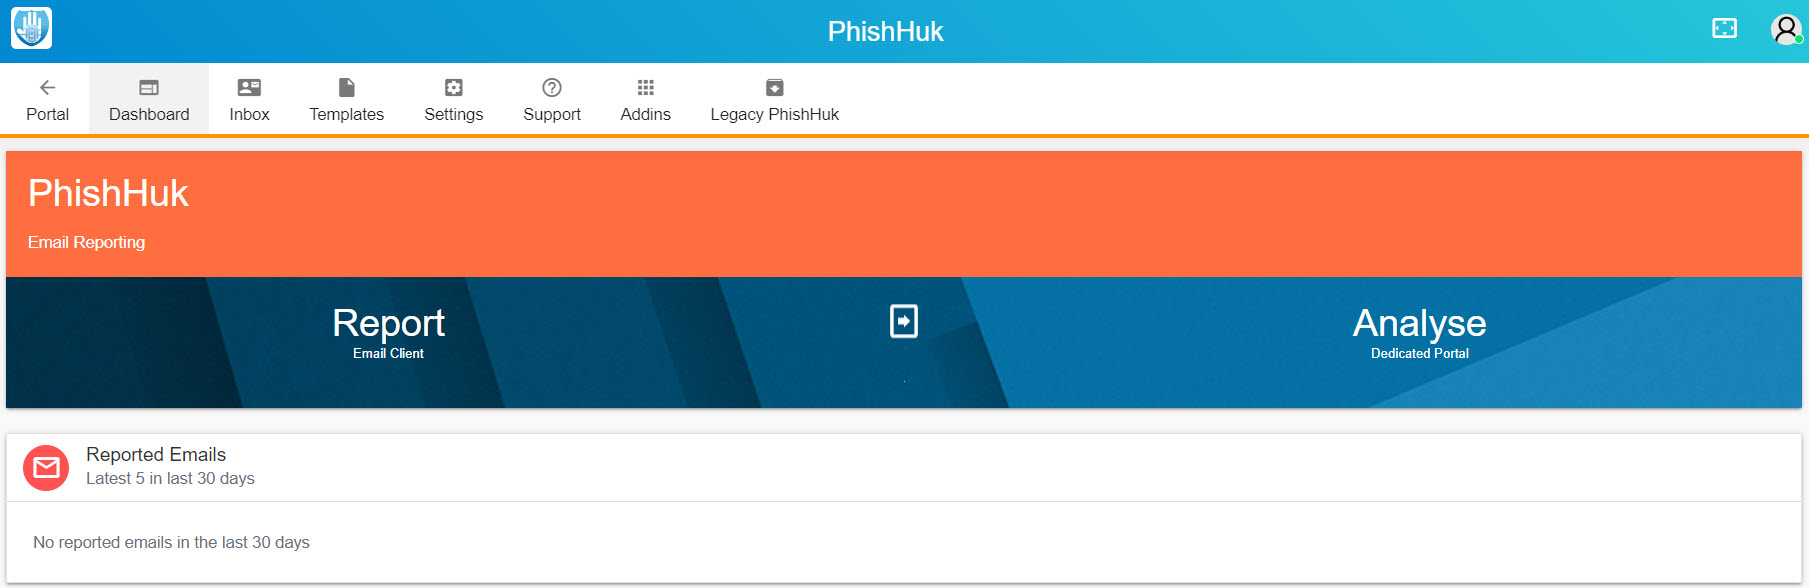 SFT-PhishHuk-Dashboard.jpg